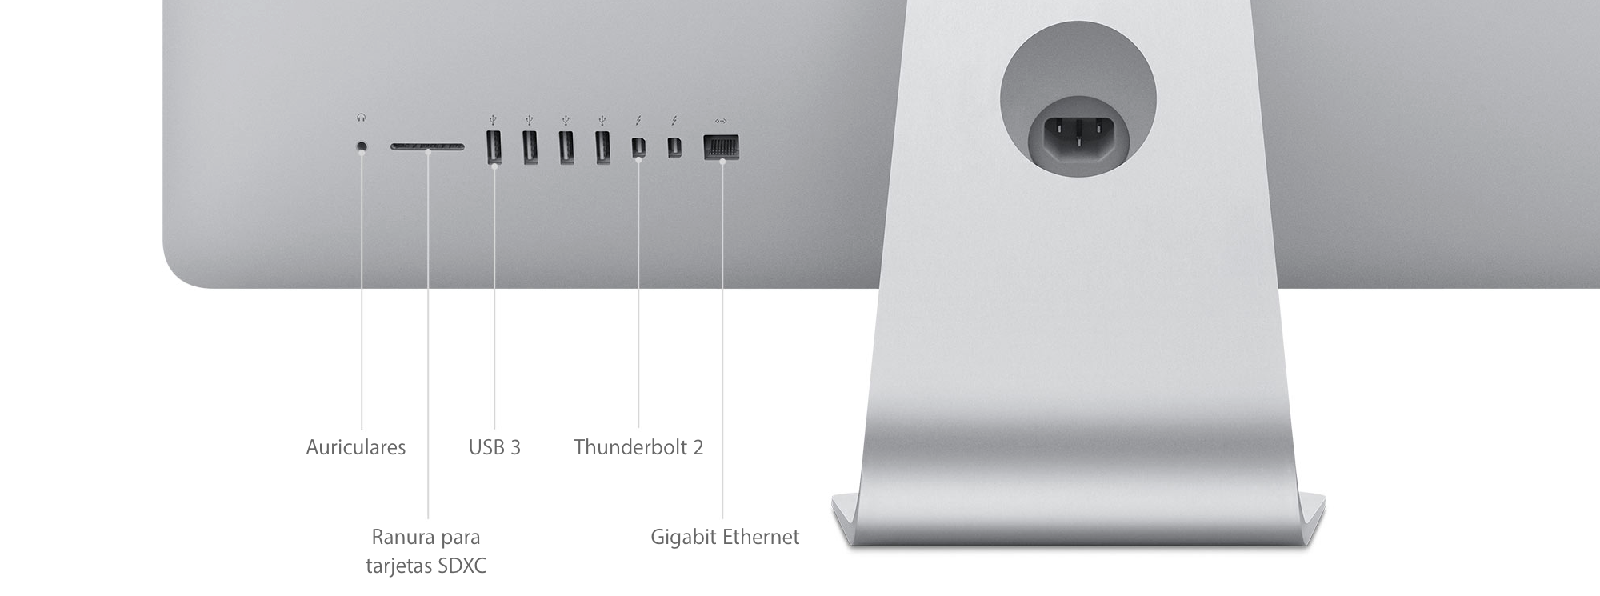 iMac (Retina 4K, 21,5 pulgadas, finales de 2015) - Especificaciones  técnicas (ES)